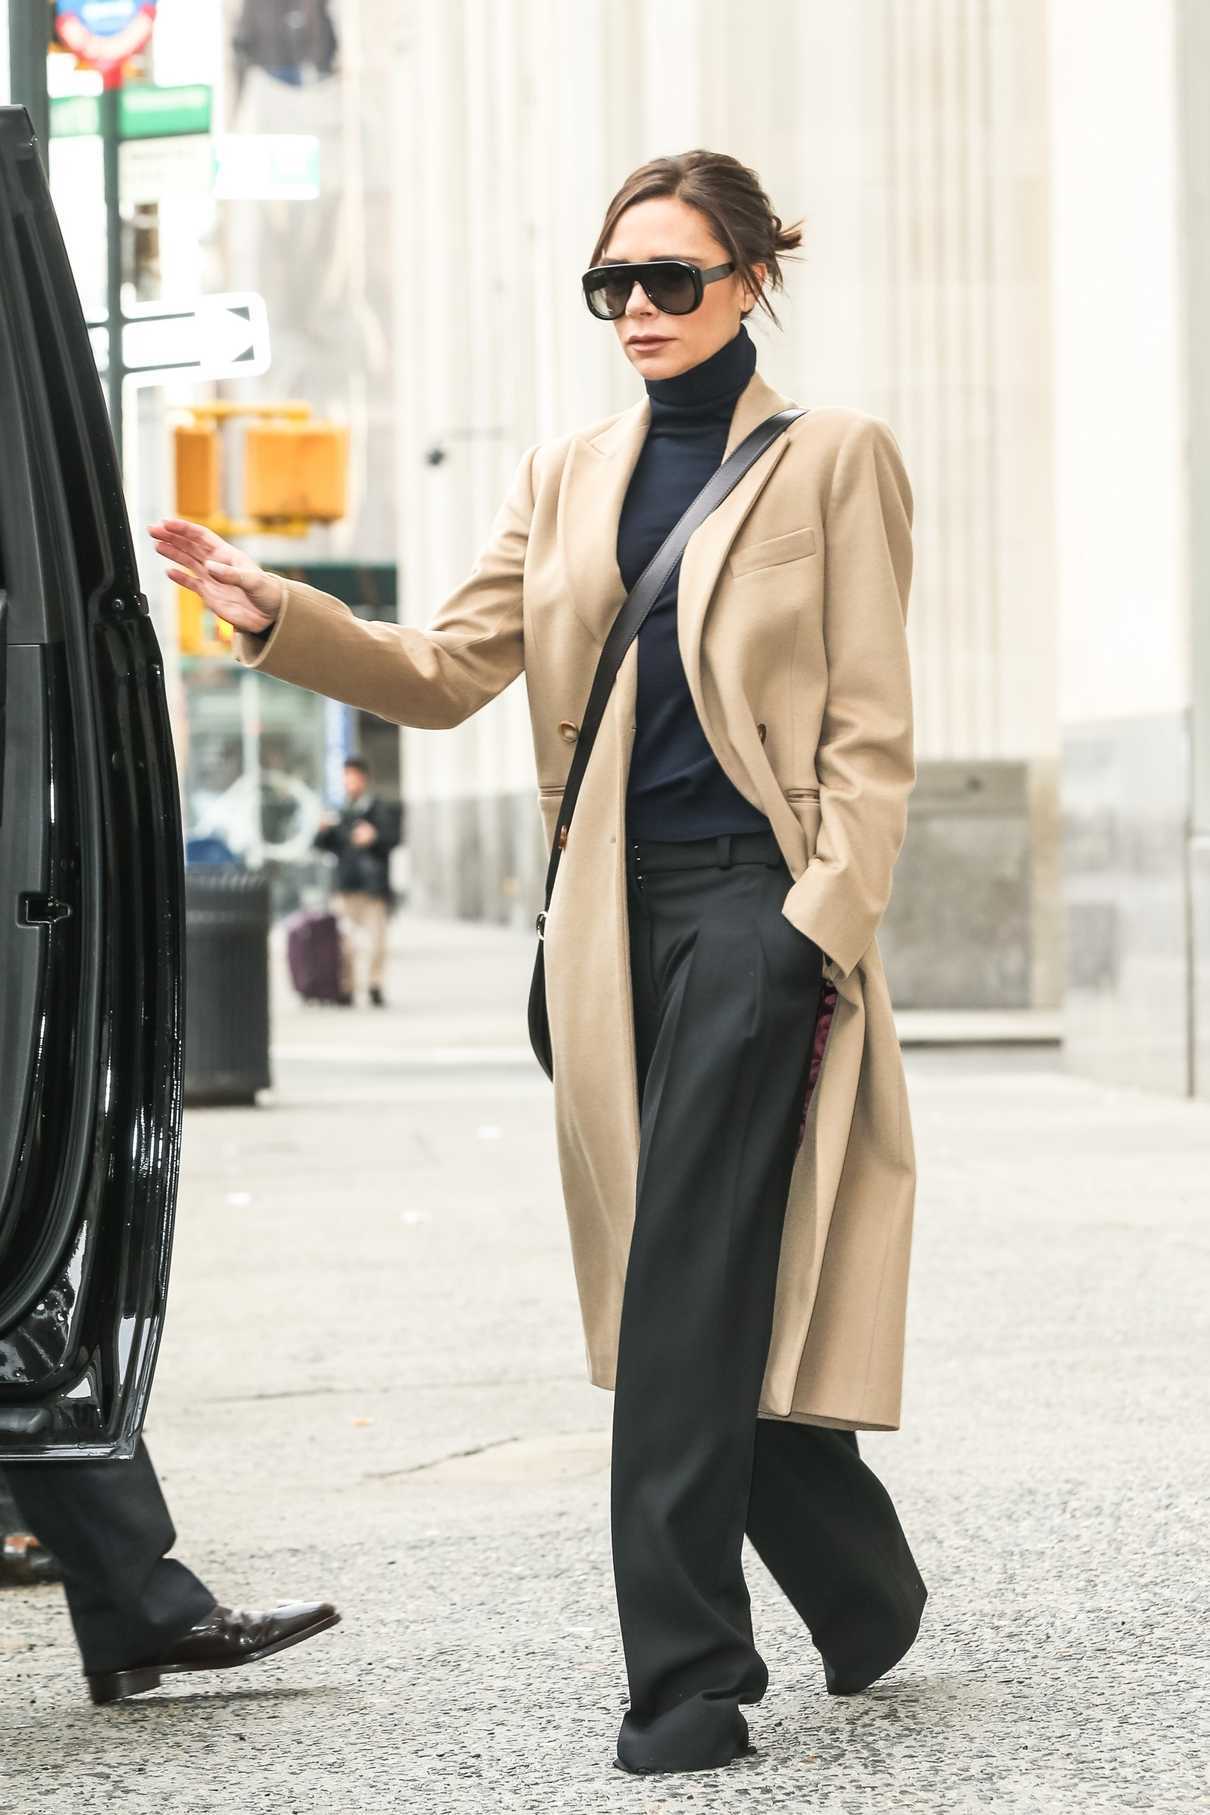 Victoria Beckham Leaves Her Hotel in Manhattan, New York City 02/10/2018-4